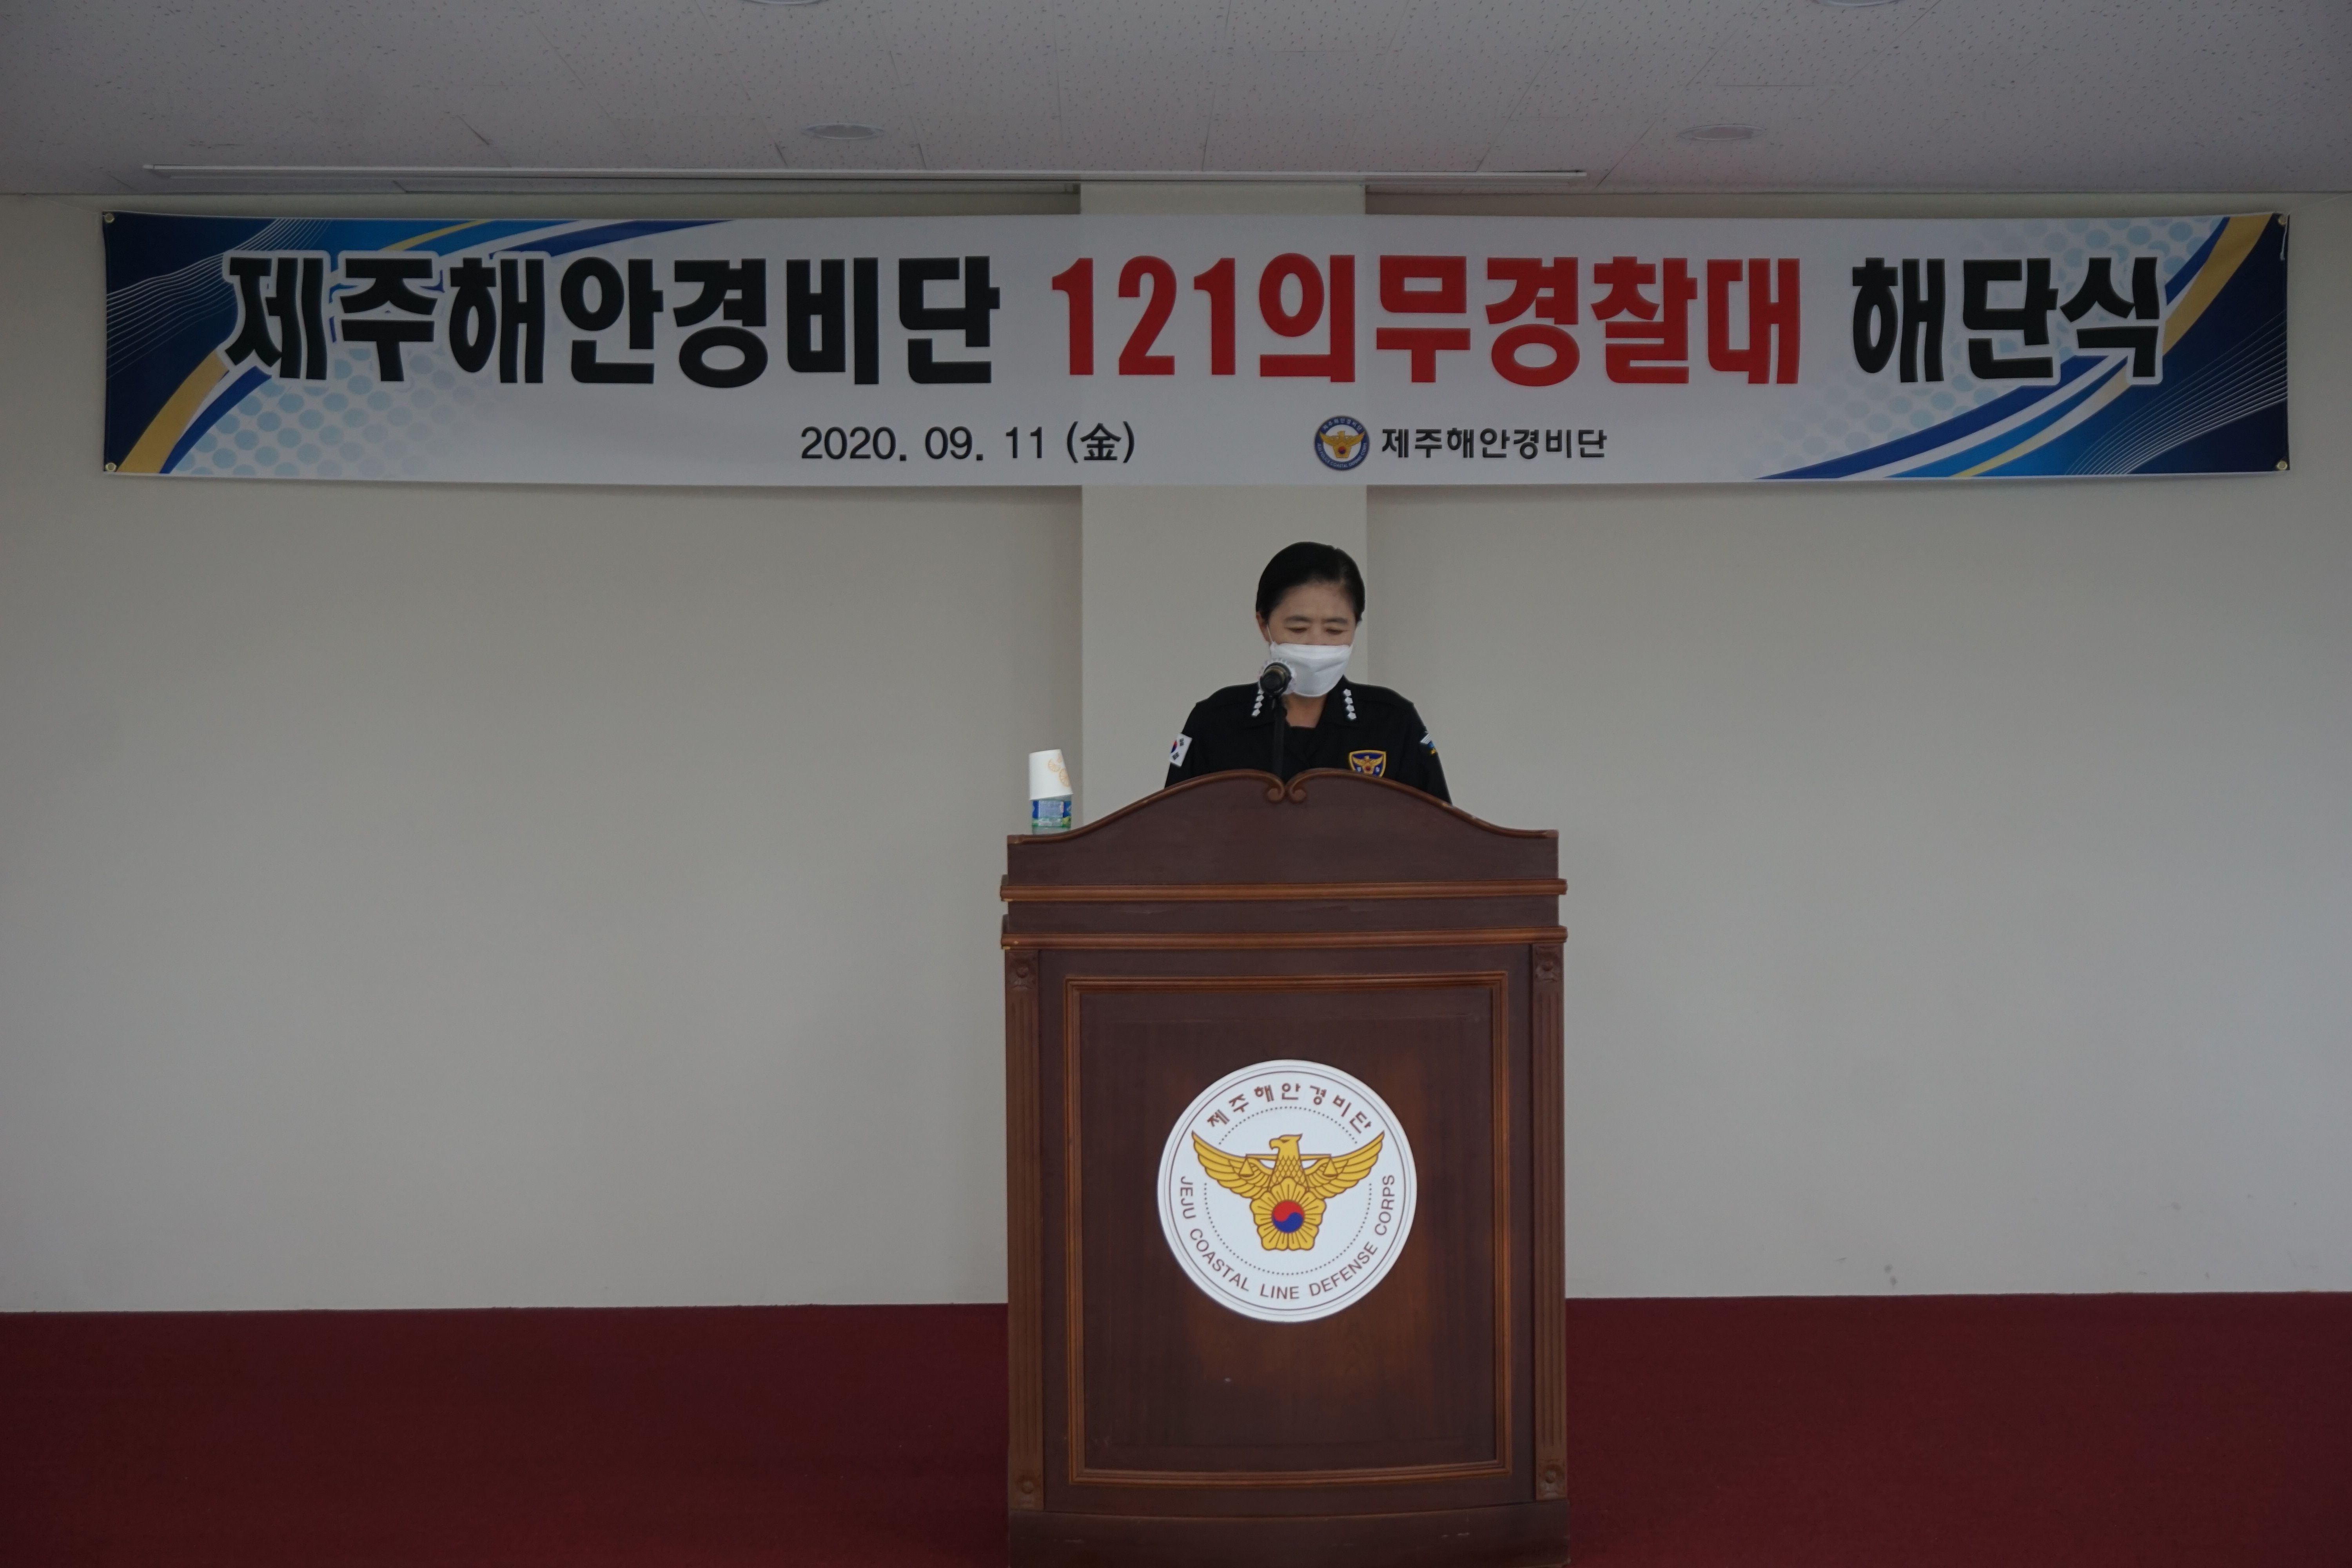 121의무경찰대 해단식 개최